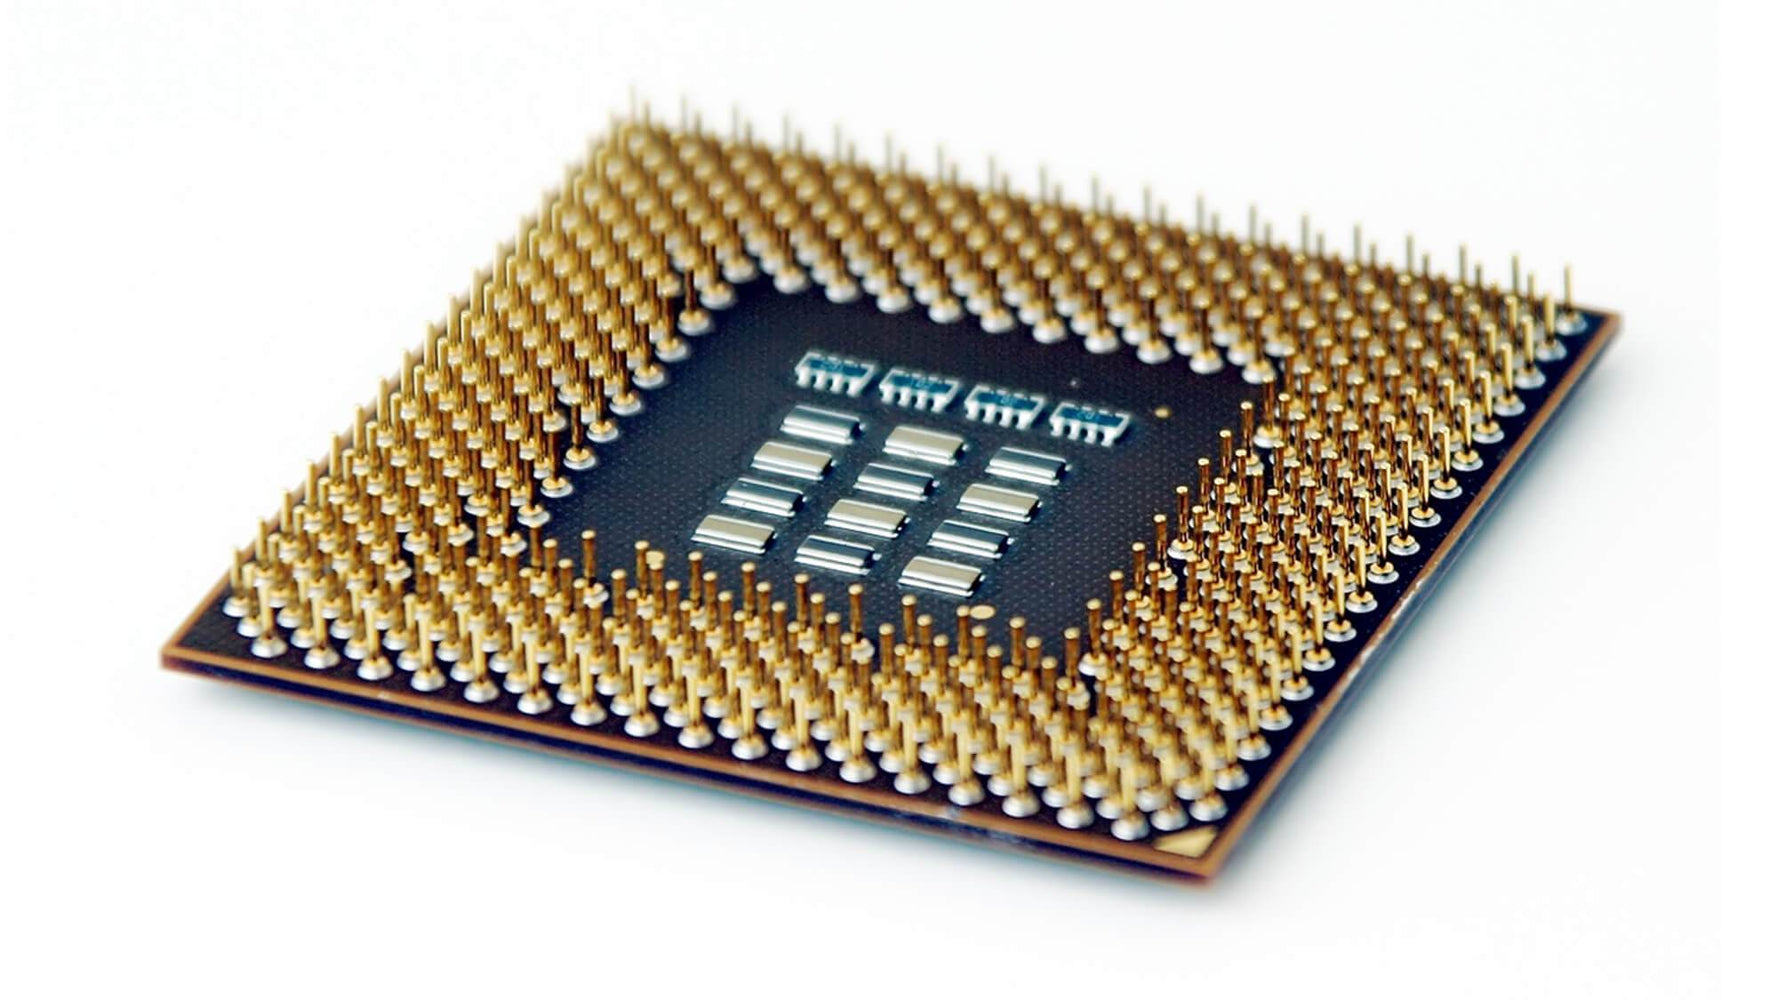 WMESL94V - Gateway 3.60GHz 800MHz FSB 2MB L2 Cache Socket LGA775 Intel Pentium 4 661 1-Core Processor